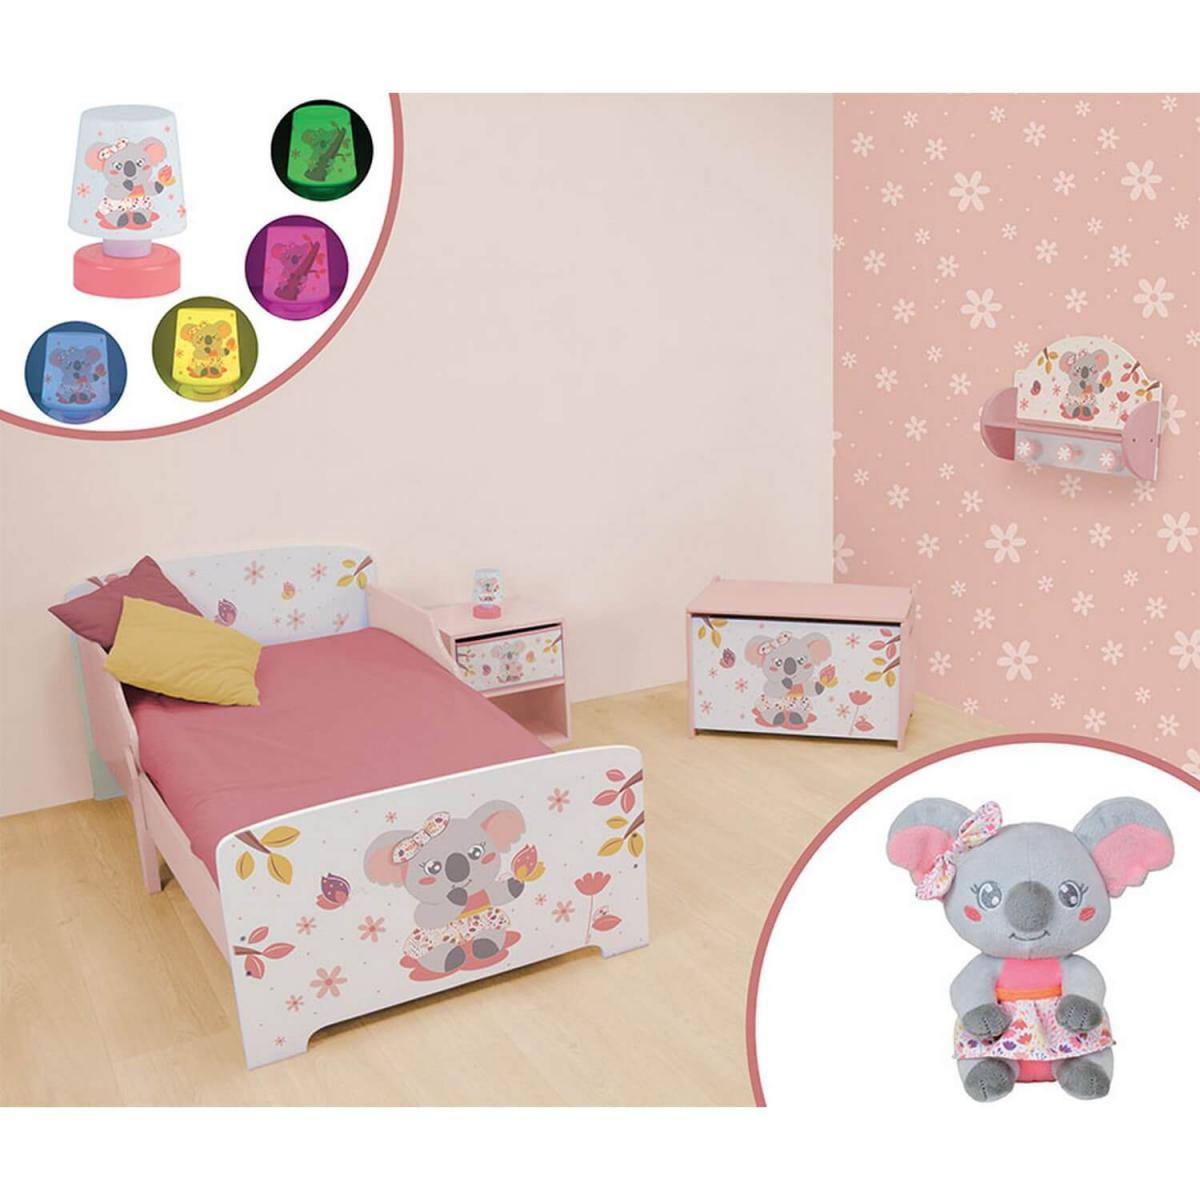 Jemini/Fun House - Chambre complète Koala 6 en 1 avec lit + coffre à jouets + Table de chevet + veilleuse + porte-manteaux + peluche Koala - Lit bébé